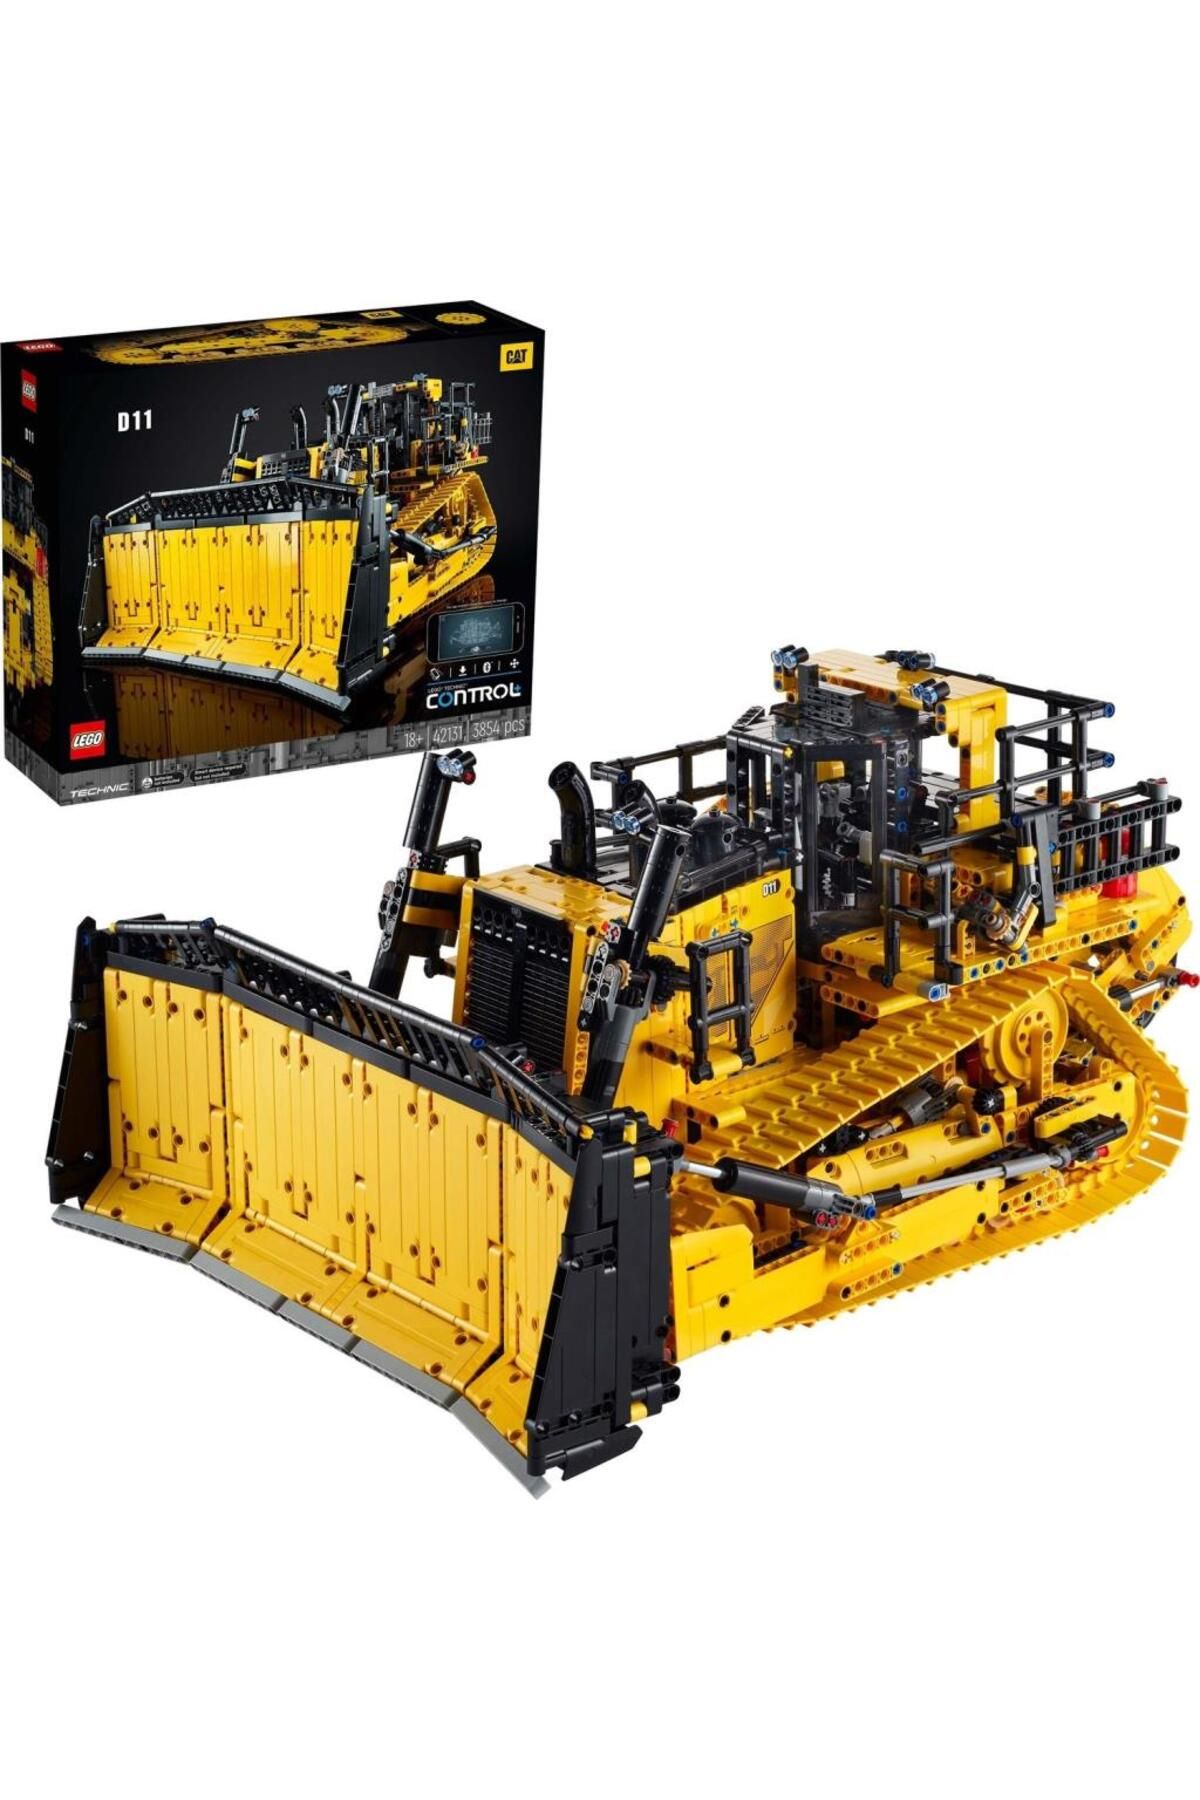 LEGO لگو بولدوزر ست ساختمان معتبر ماشین آلات ساختمانی برای بزرگسالان (3854 قطعه)